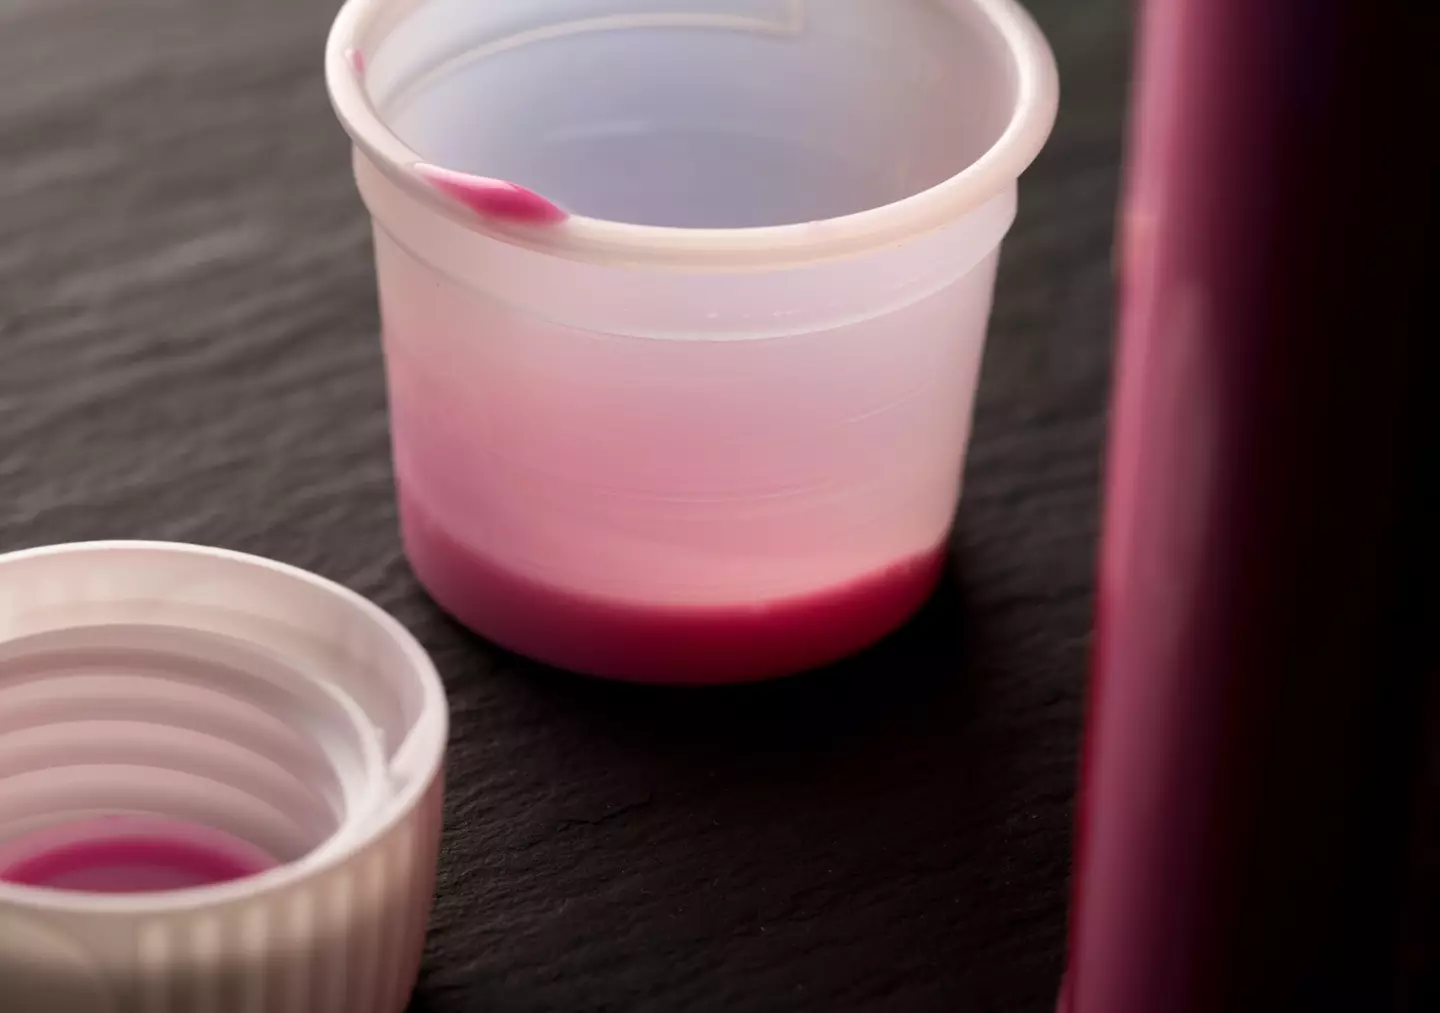 Hernandez disguised pink medicine as an energy drink.